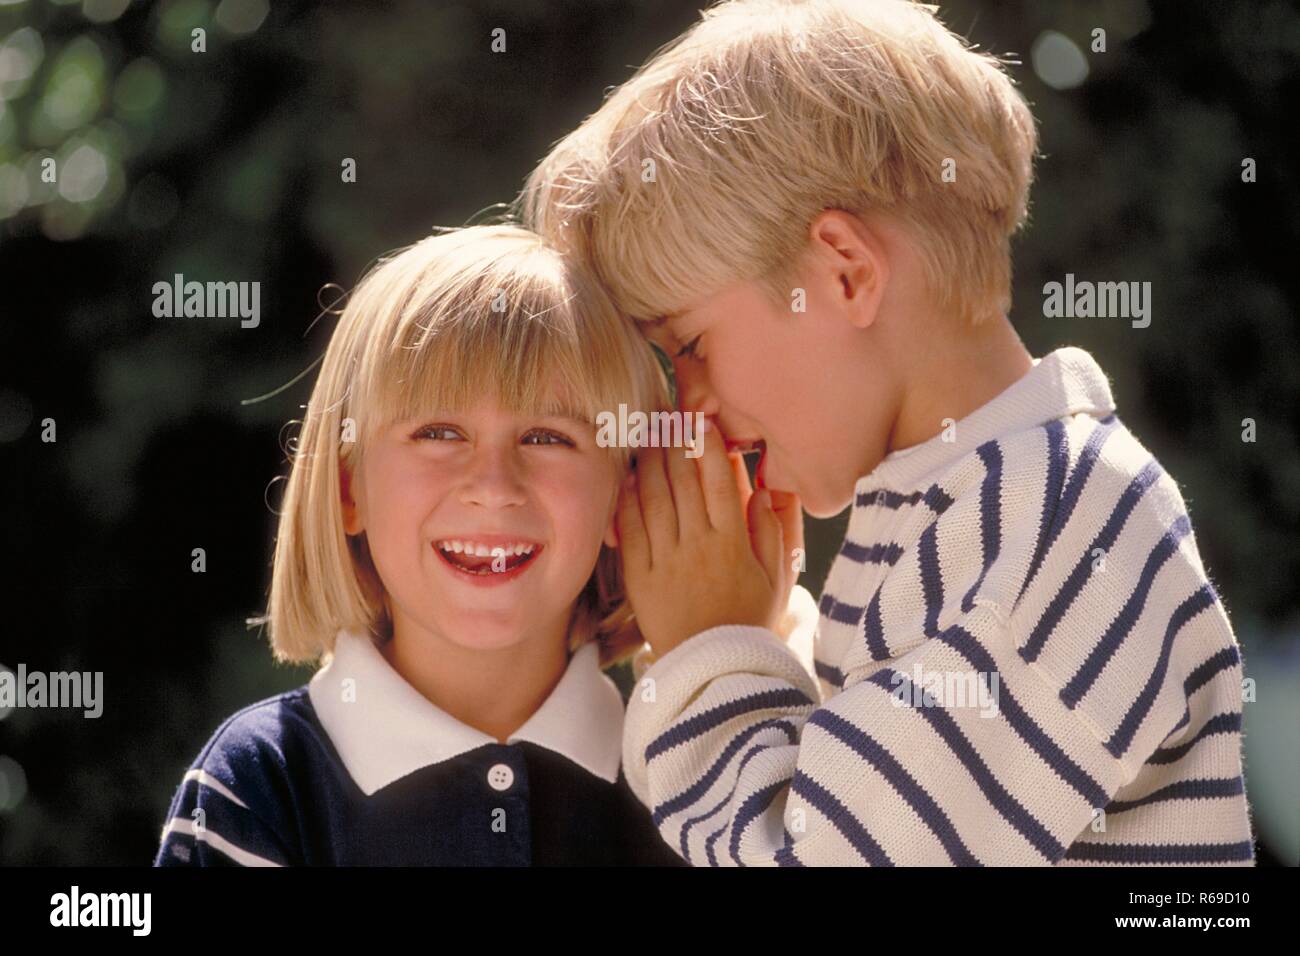 Outdoor, Portrait, blau-weiss gekleidetes blondes Kinderpaar, 5-6 Jahre, Junge fluestert dem  Maedchen etwas ins Ohr Stock Photo